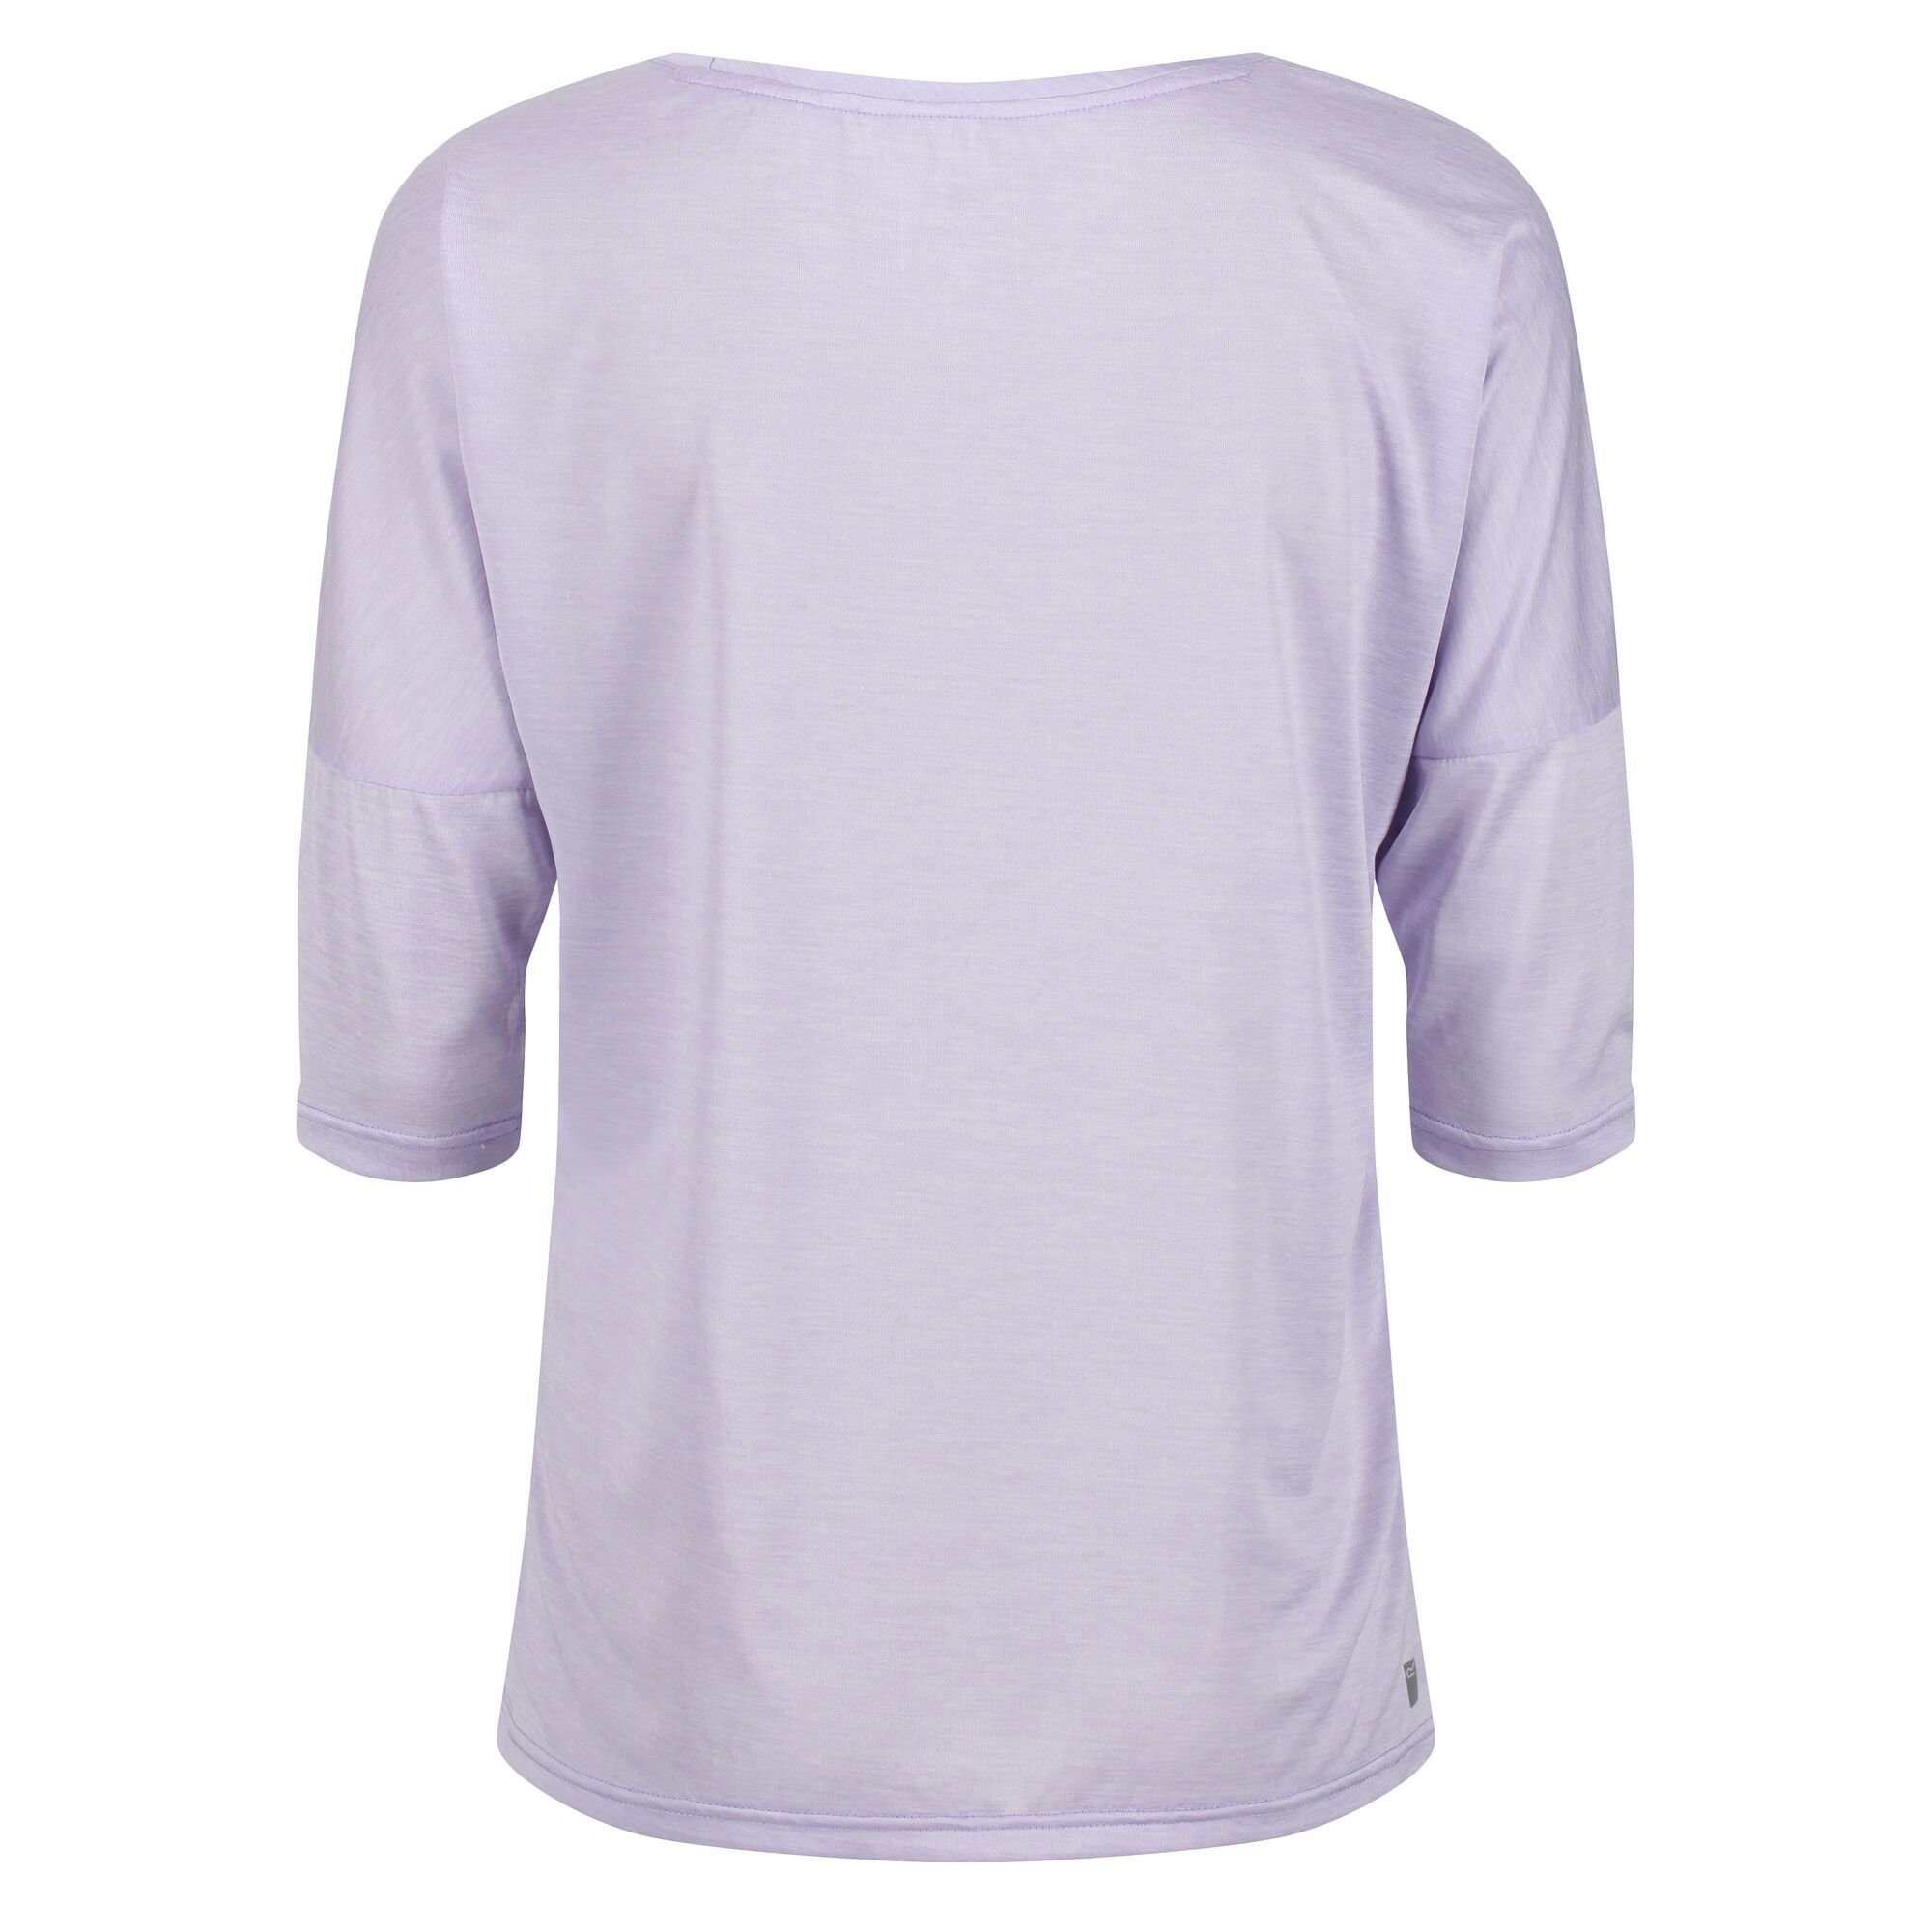 II schnelltrocknend Funktionsshirt Regatta Pastel Lilac für Damen, Pulser